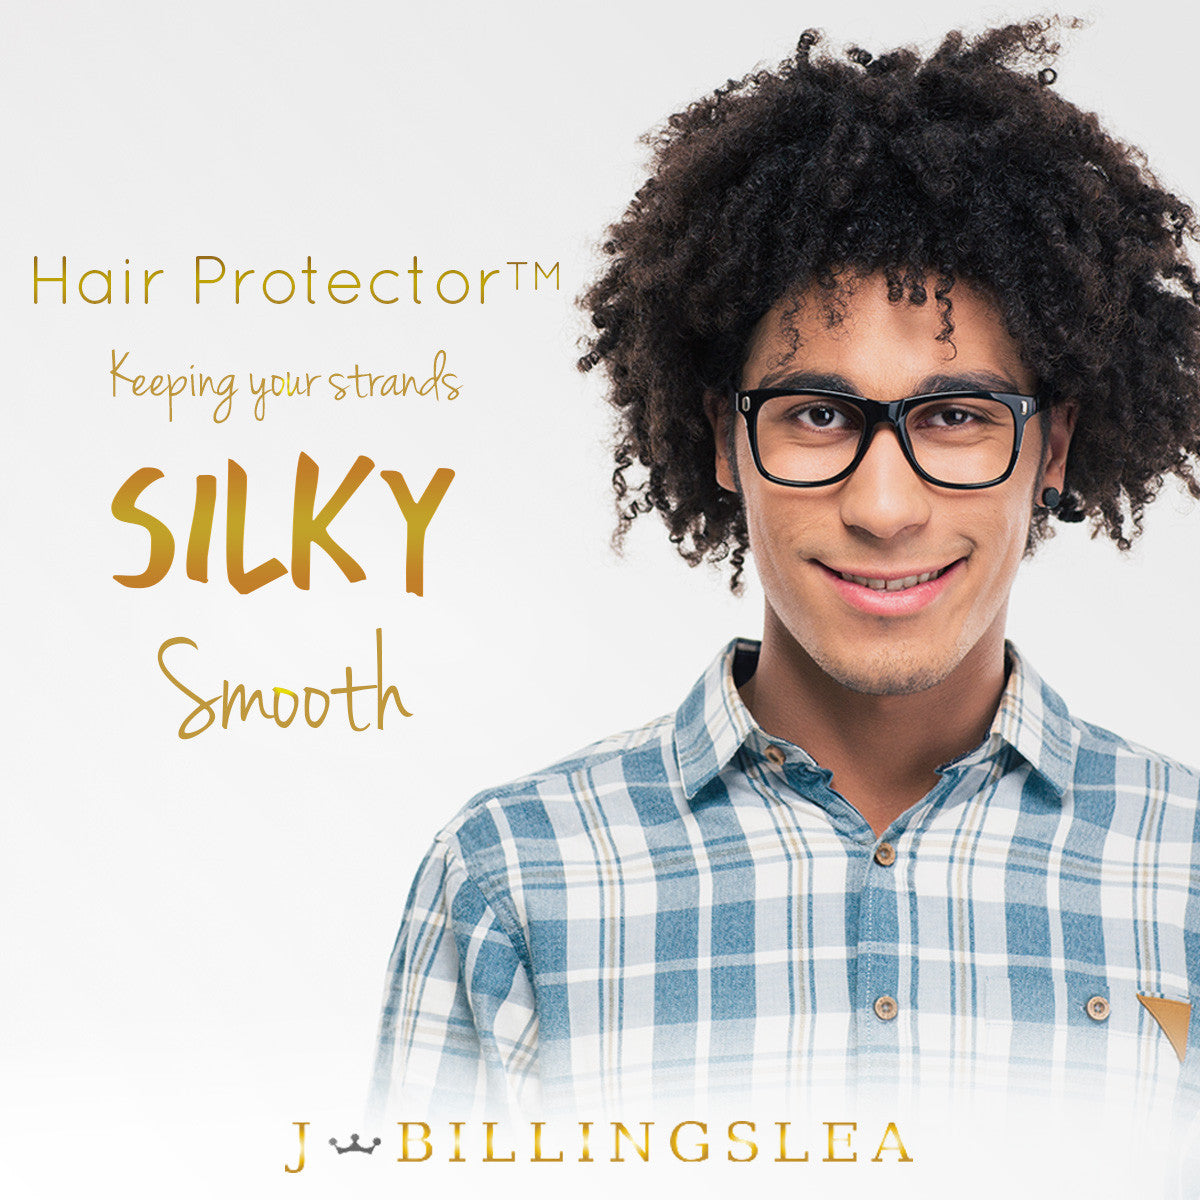 Hair Protector™